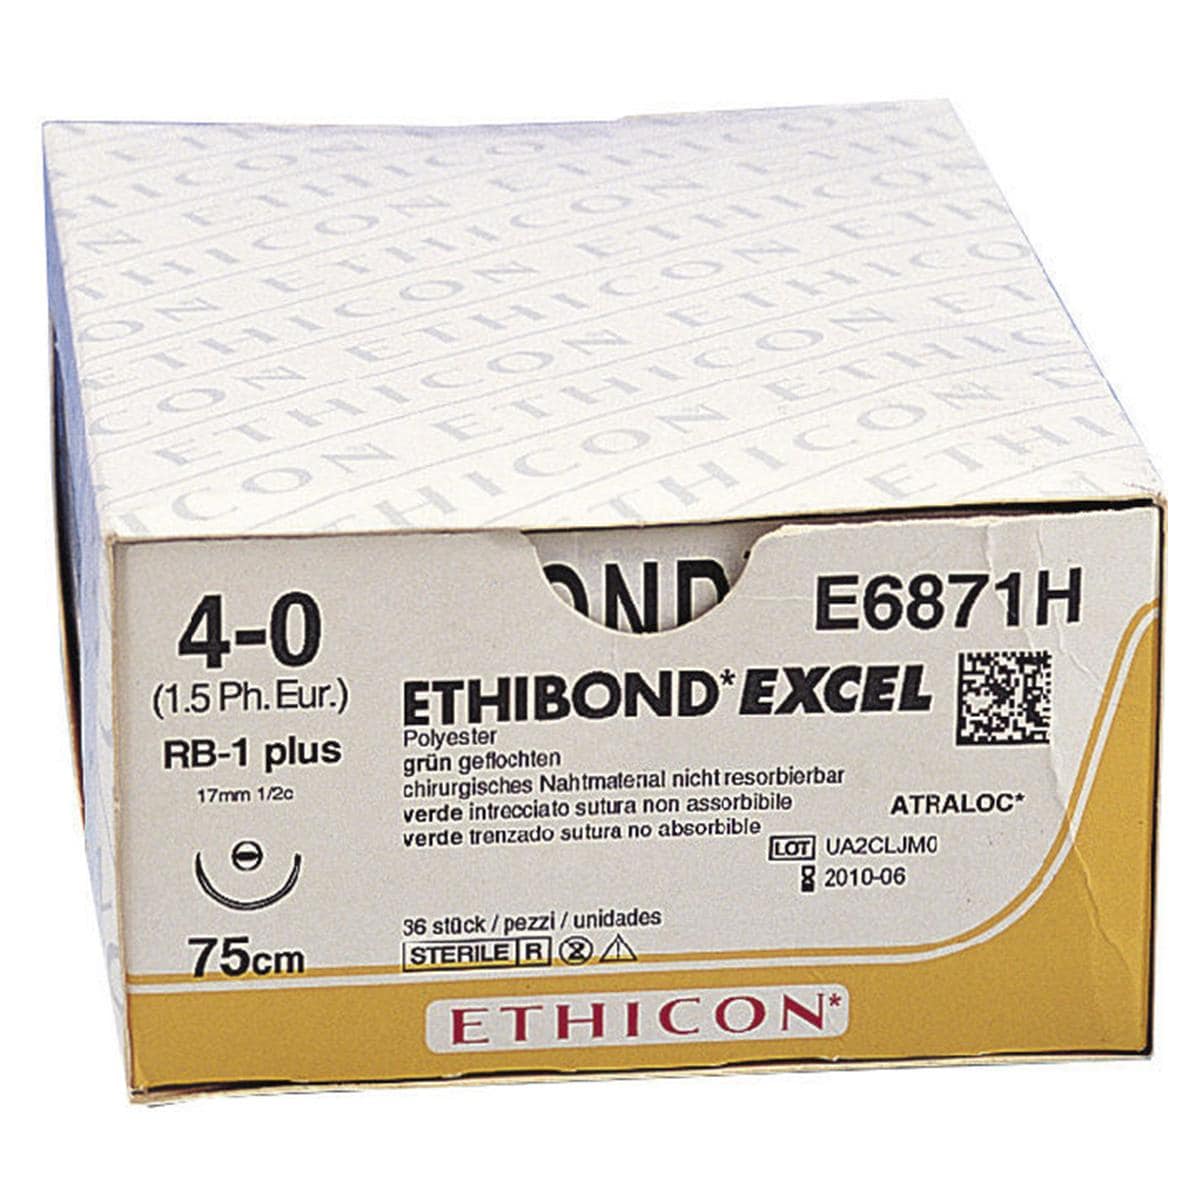 SUTURE ETHIBOND EXCEL - AGO CILINDRICO PLUS - FILO CM 75 - E 6871 H - RB-1 1/2 cerchio - 4/0 (1,5) mm 17 - 36 pz.